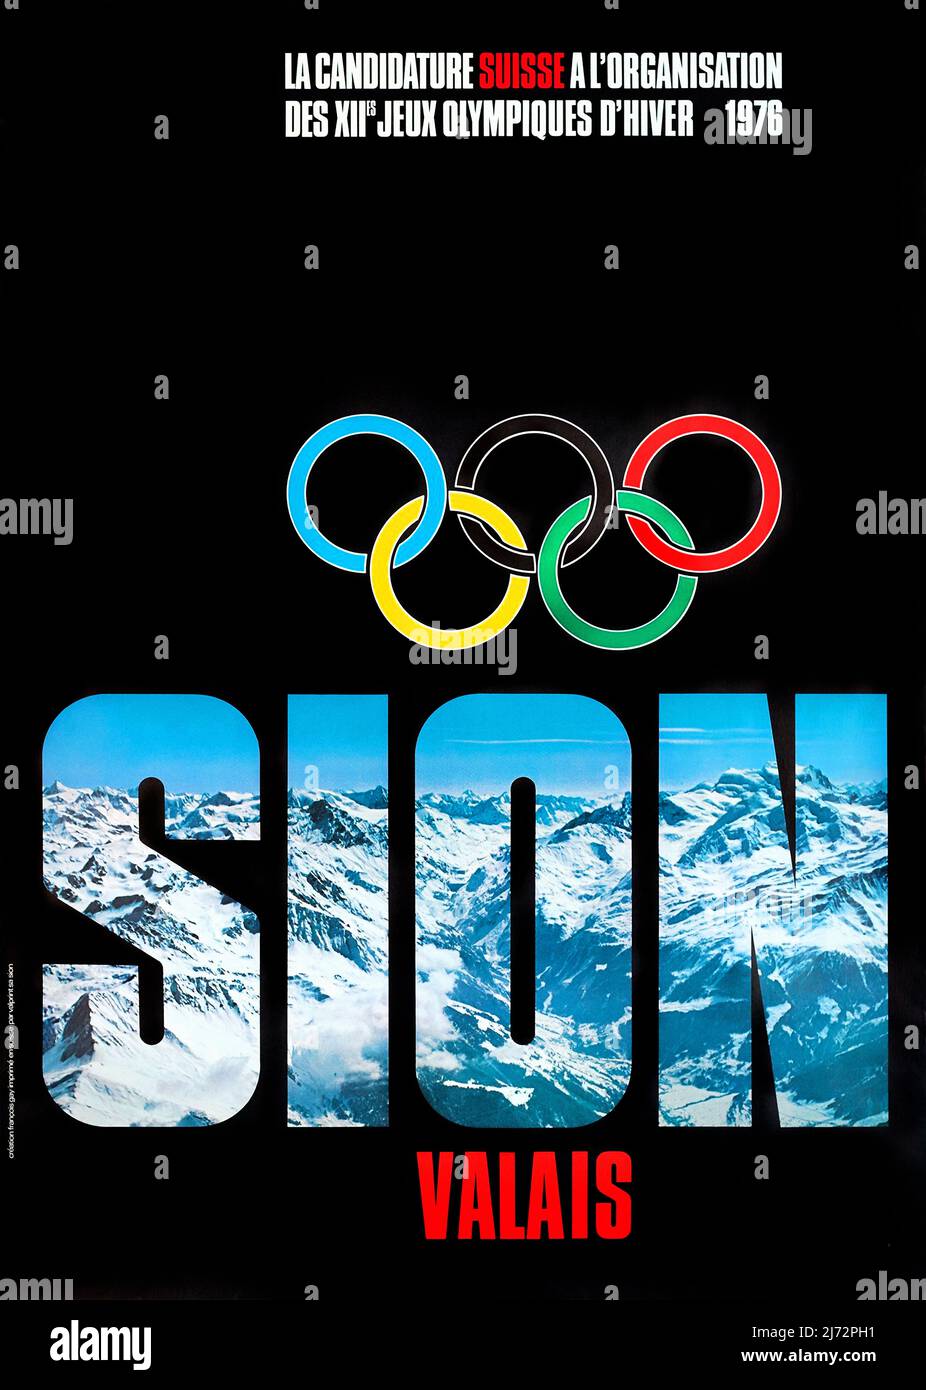 VIntage Olympic Winter Games Poster - Sion Valais, La candidature suisse à l'organisation des XIIes jeux olympiques d'hiver 1976 François GAY 1976 Stock Photo